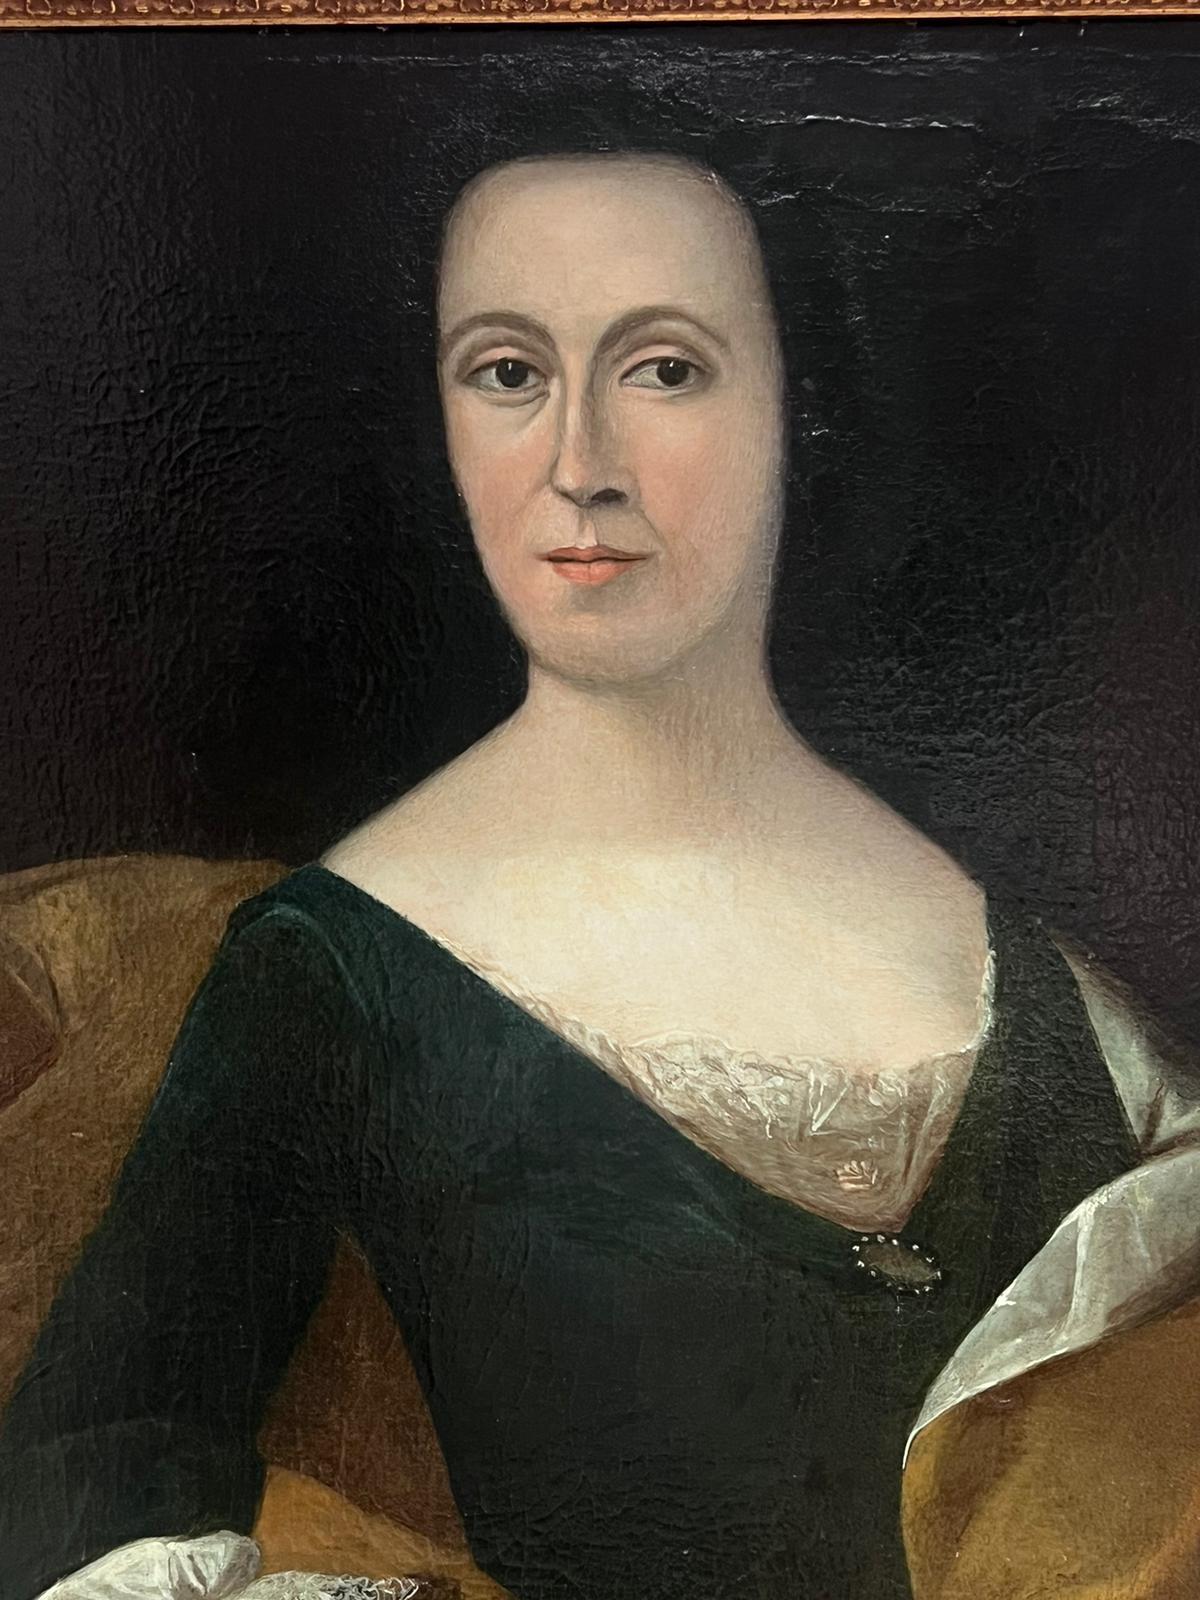 Grand portrait à l'huile européen du 18ème siècle représentant une noble dame portant des colliers de dentelle - Maîtres anciens Painting par 18th Century European